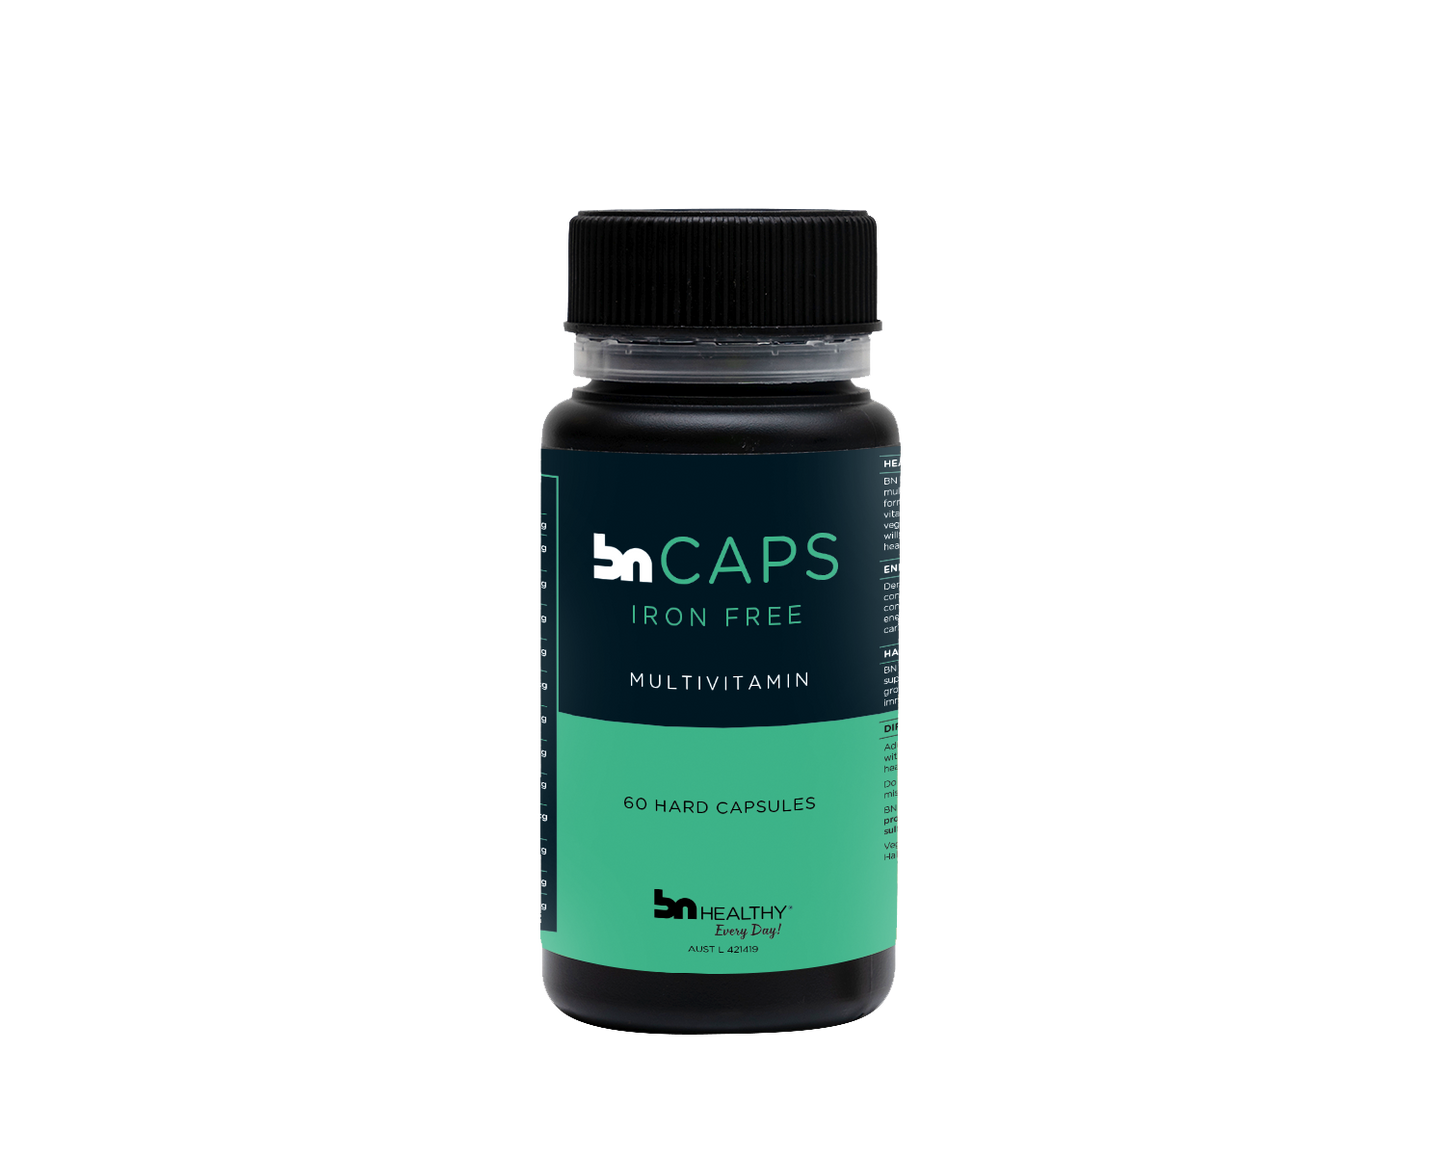 BN Caps Iron Free - Capsule Multivitamins